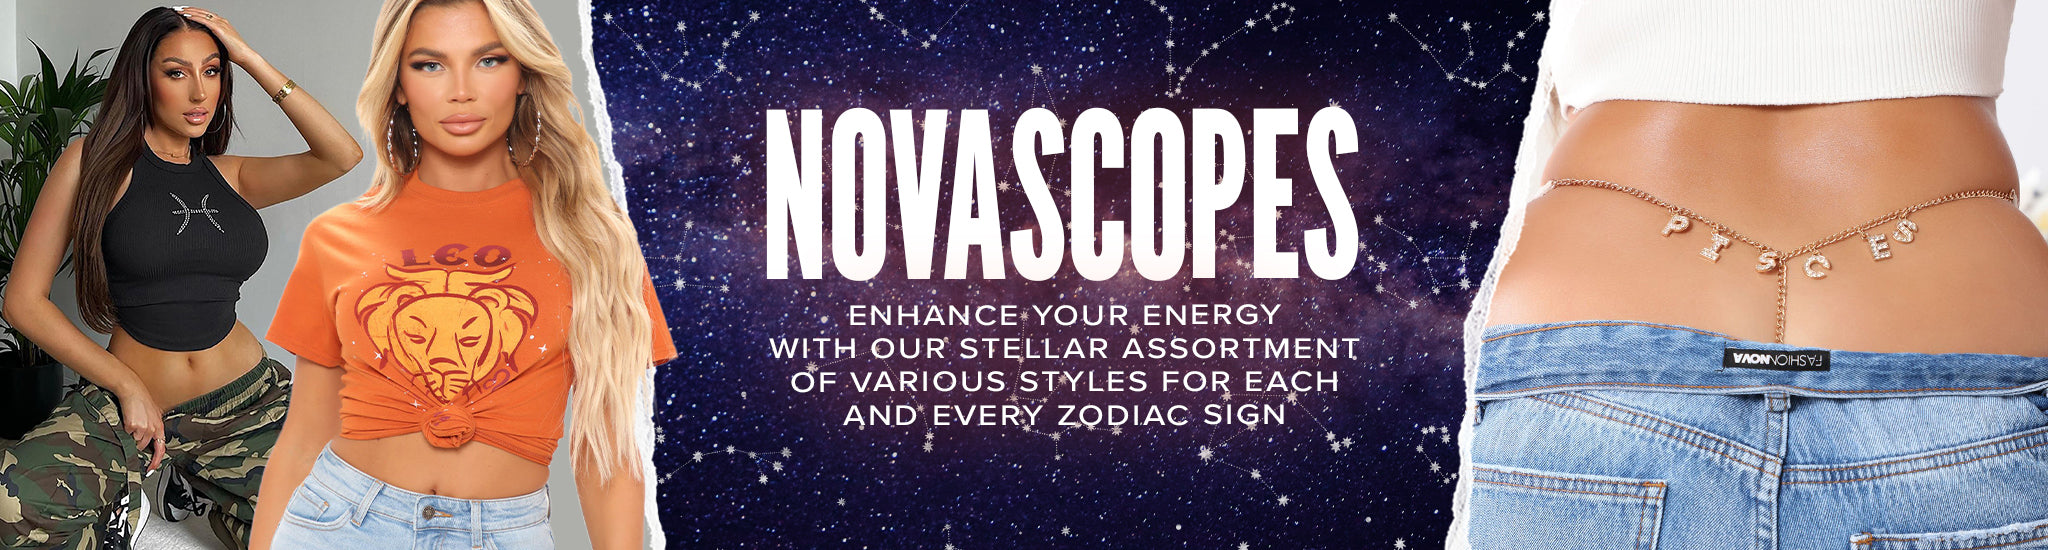 Novascope